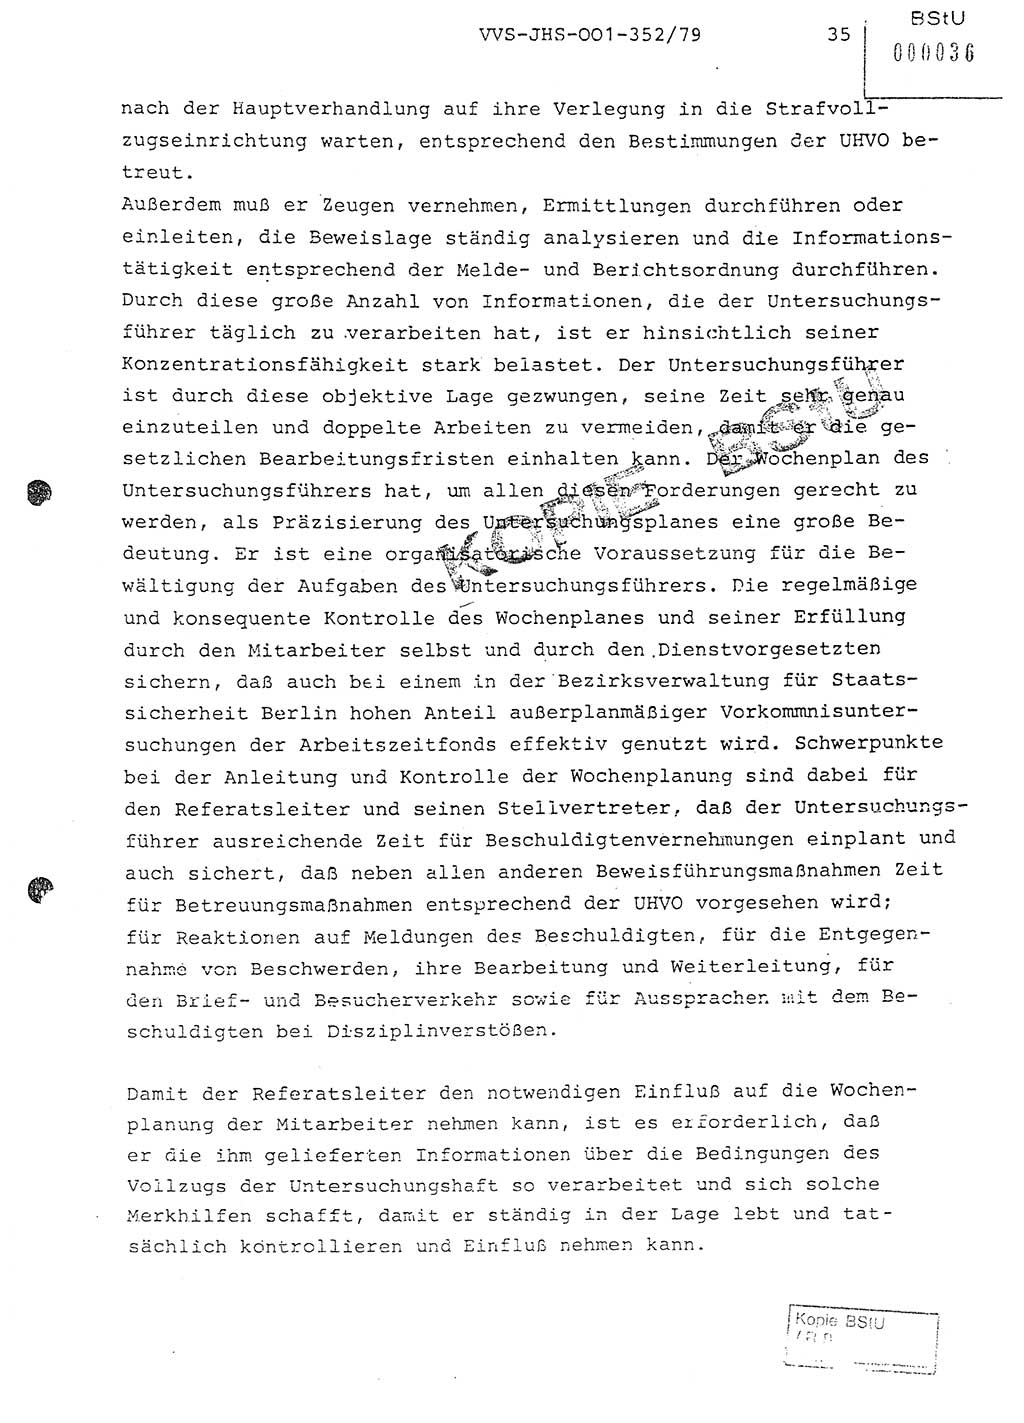 Diplomarbeit Hauptmann Peter Wittum (BV Bln. Abt. HA Ⅸ), Ministerium für Staatssicherheit (MfS) [Deutsche Demokratische Republik (DDR)], Juristische Hochschule (JHS), Vertrauliche Verschlußsache (VVS) o001-352/79, Potsdam 1979, Seite 35 (Dipl.-Arb. MfS DDR JHS VVS o001-352/79 1979, S. 35)